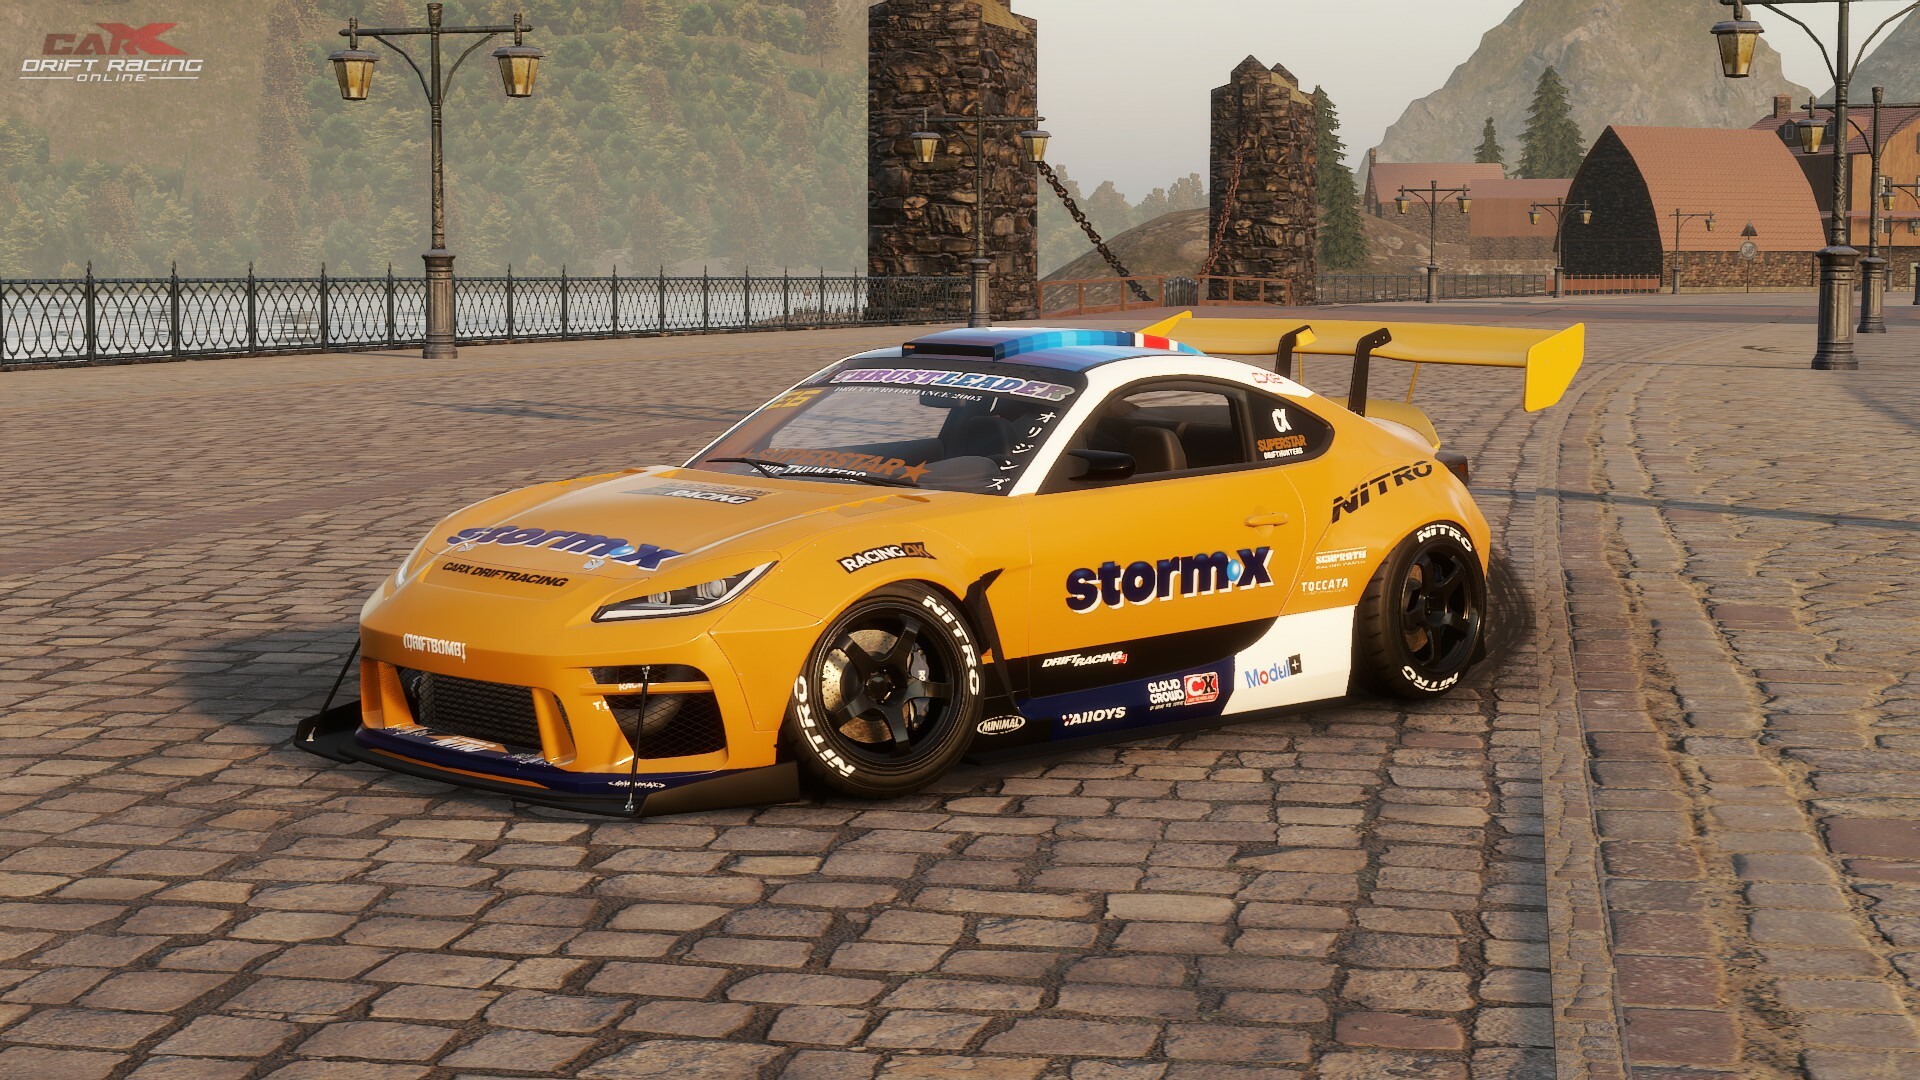 NEW! CarX Drift Racing PTR Update 2.18.0 (V1)